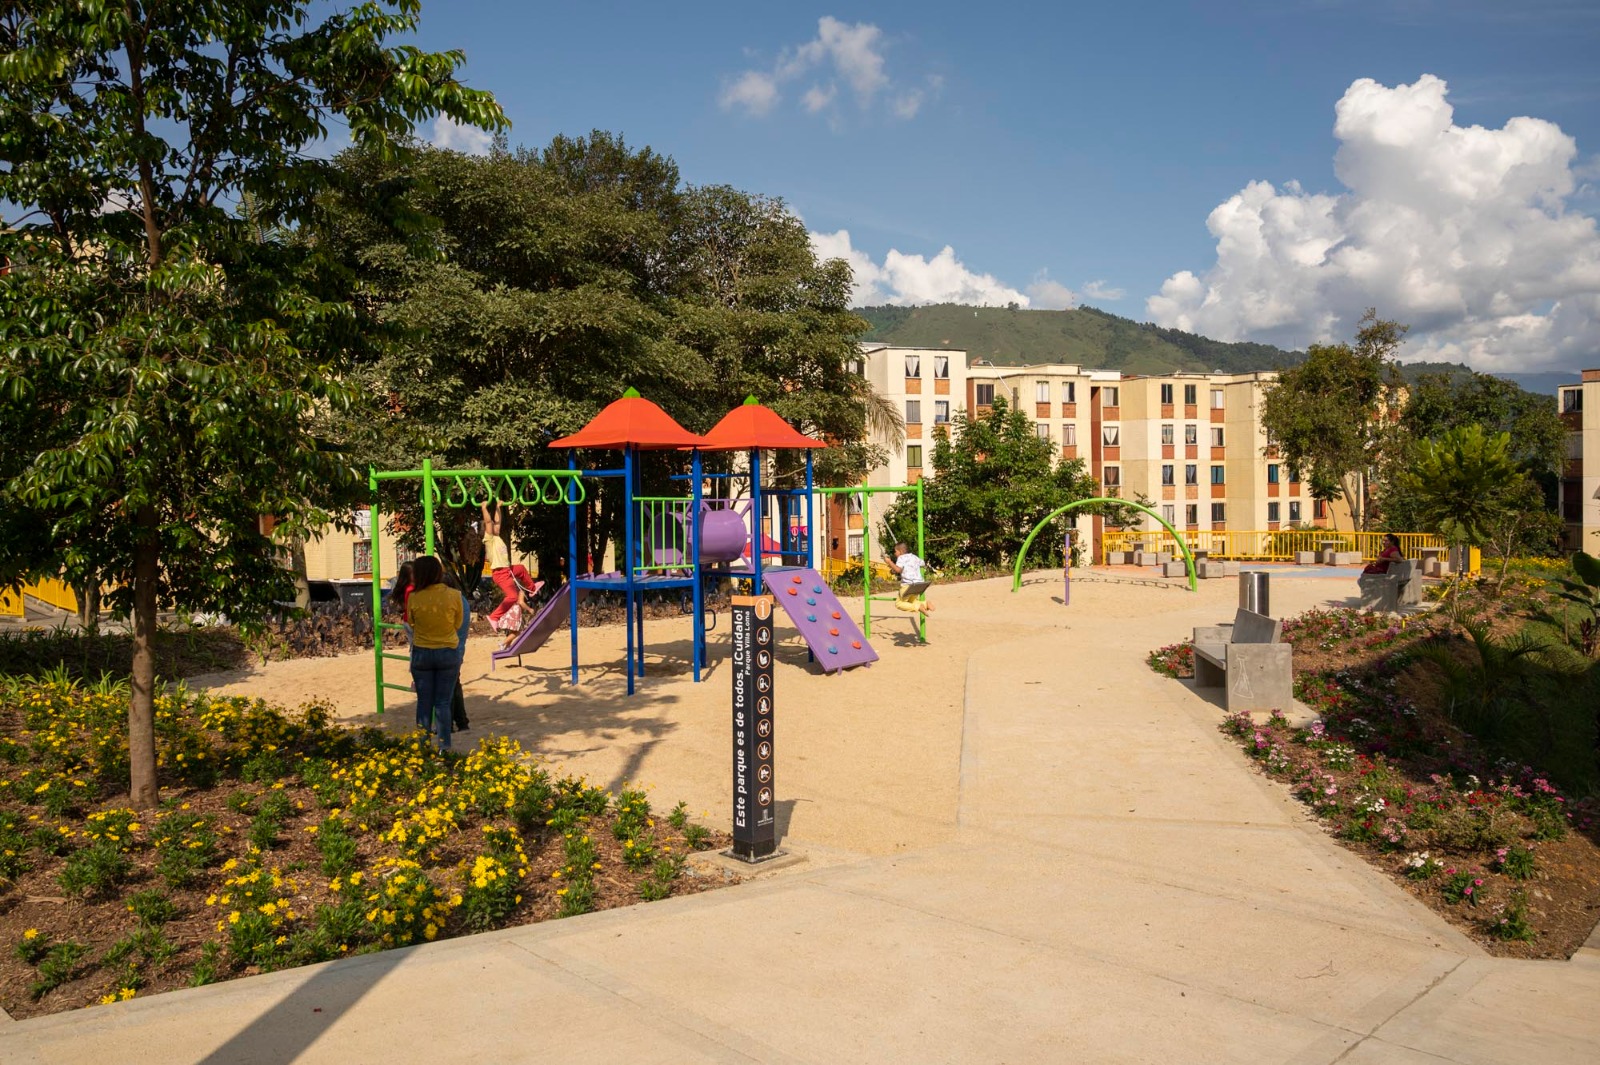 Cuatro parques fueron renovados en San Antonio de Prado gracias a Presupuesto Participativo